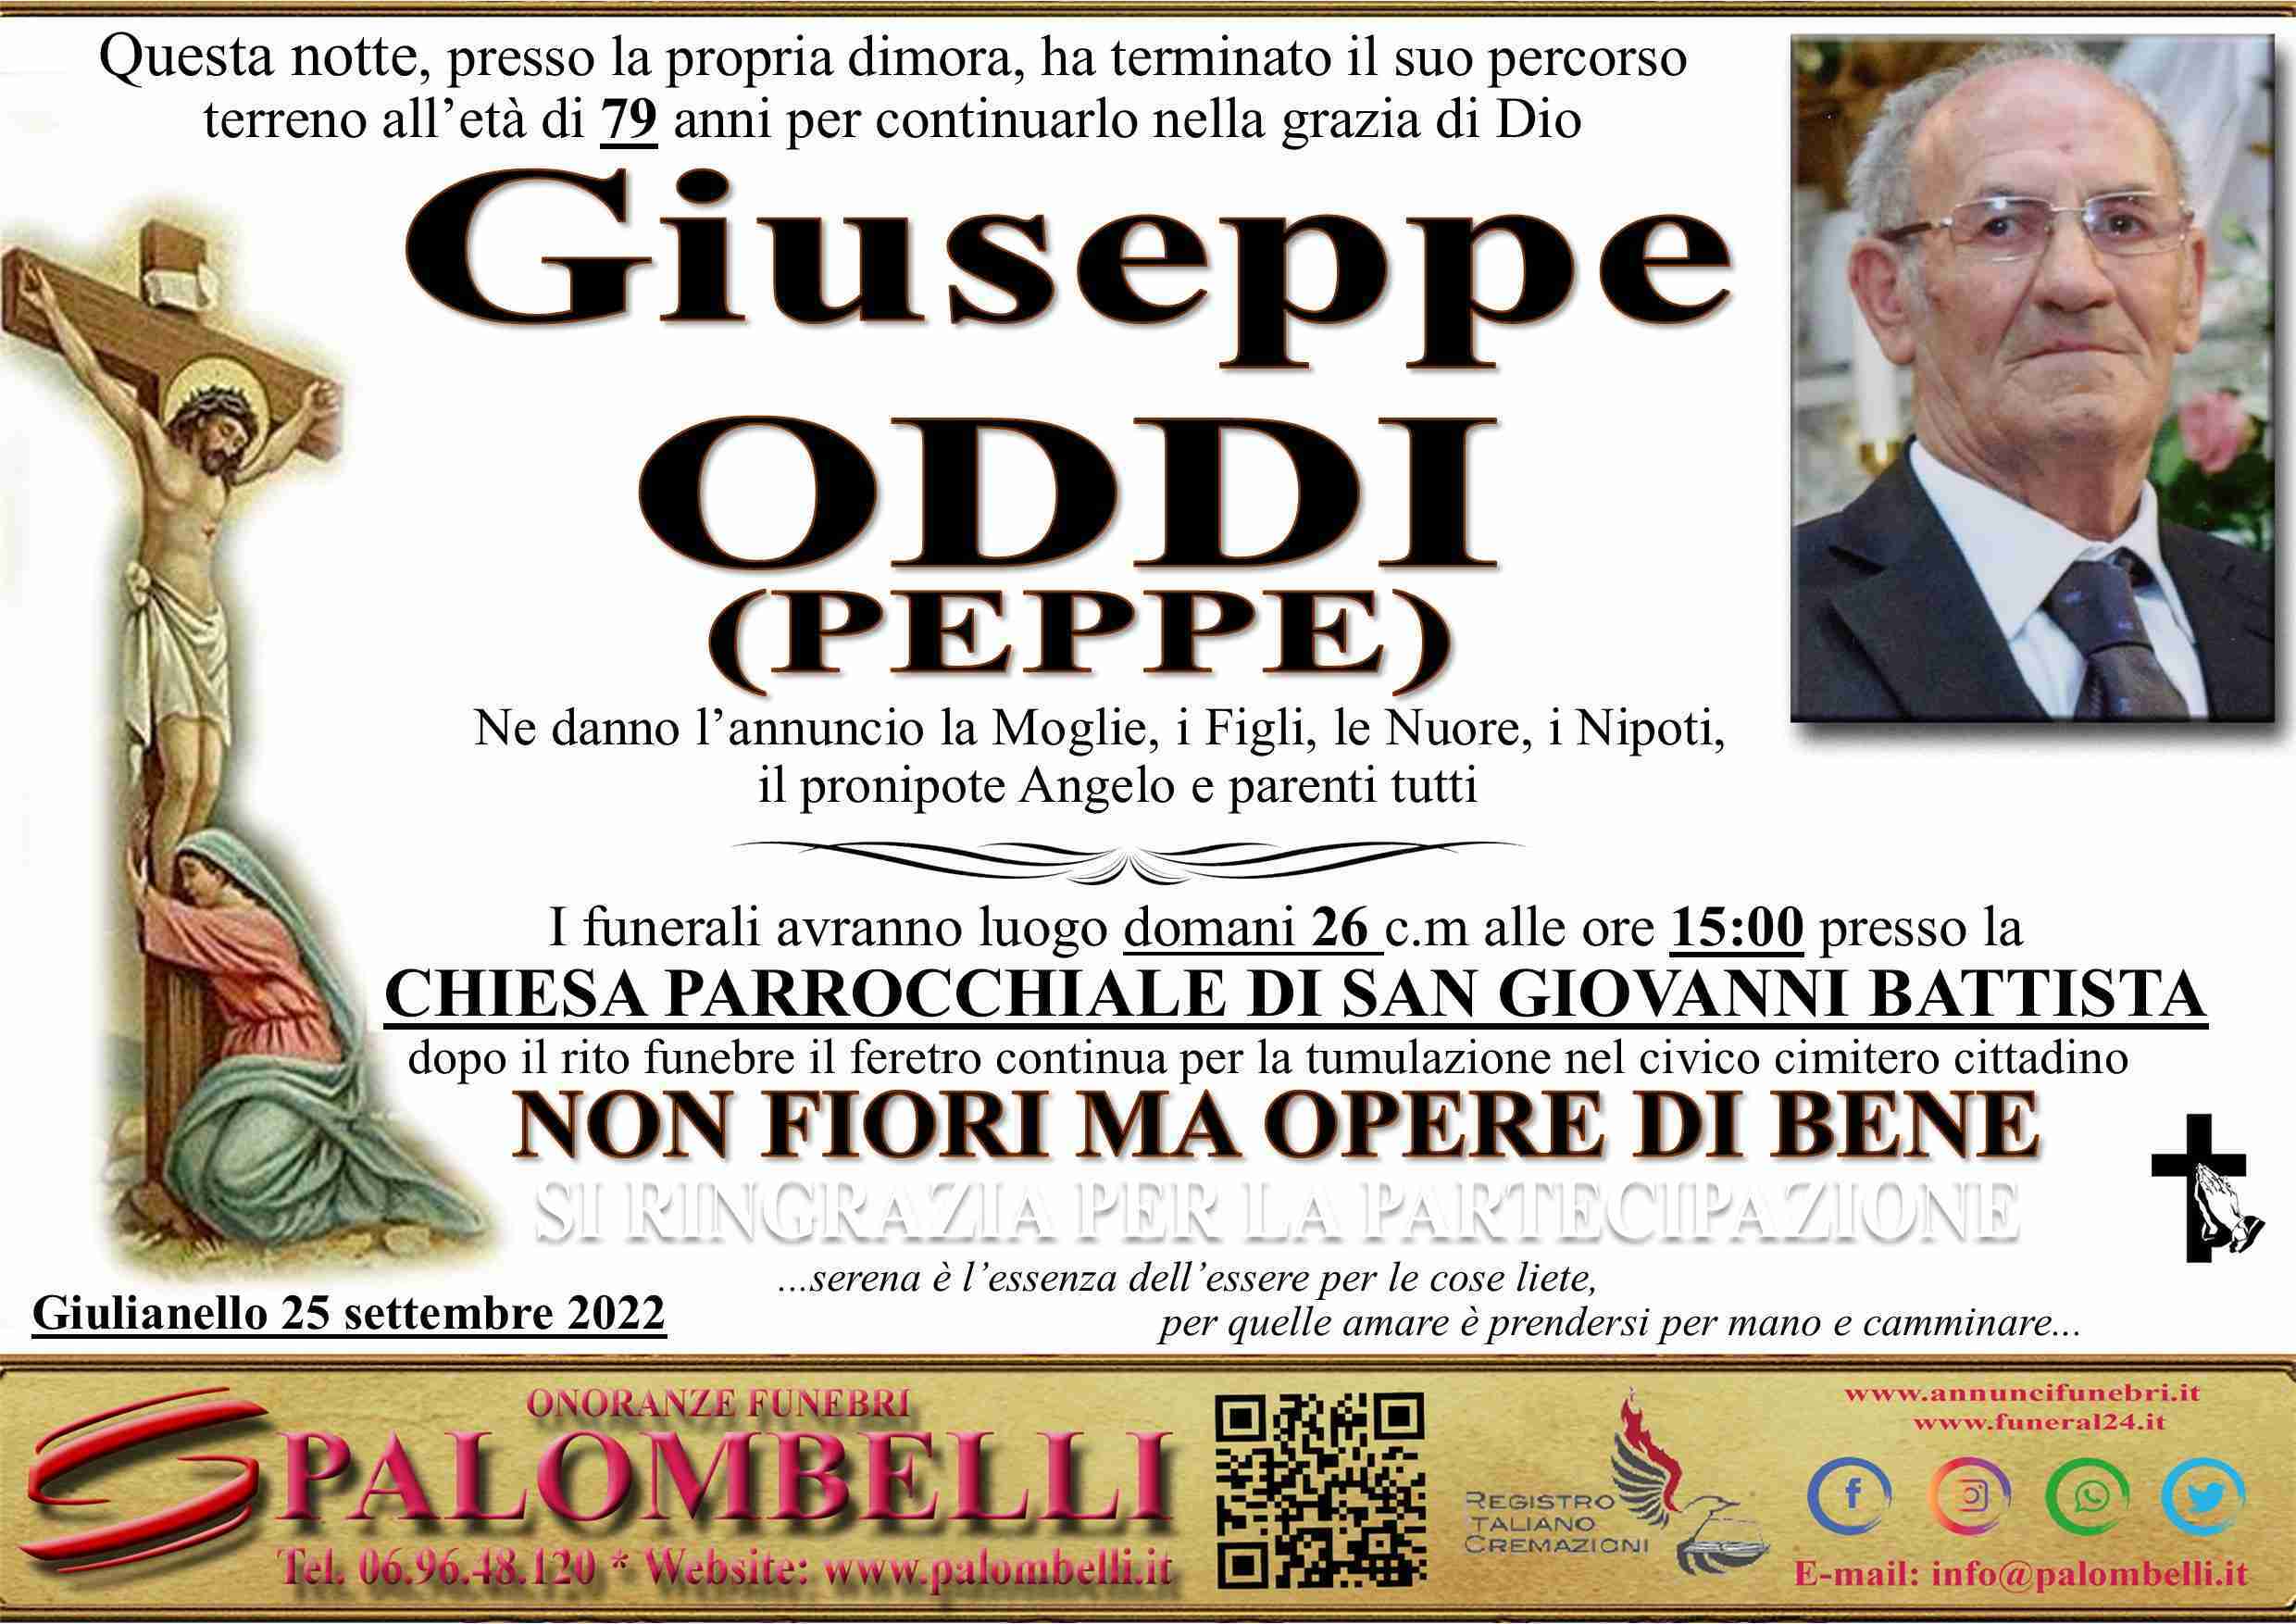 Giuseppe (Peppe) ODDI